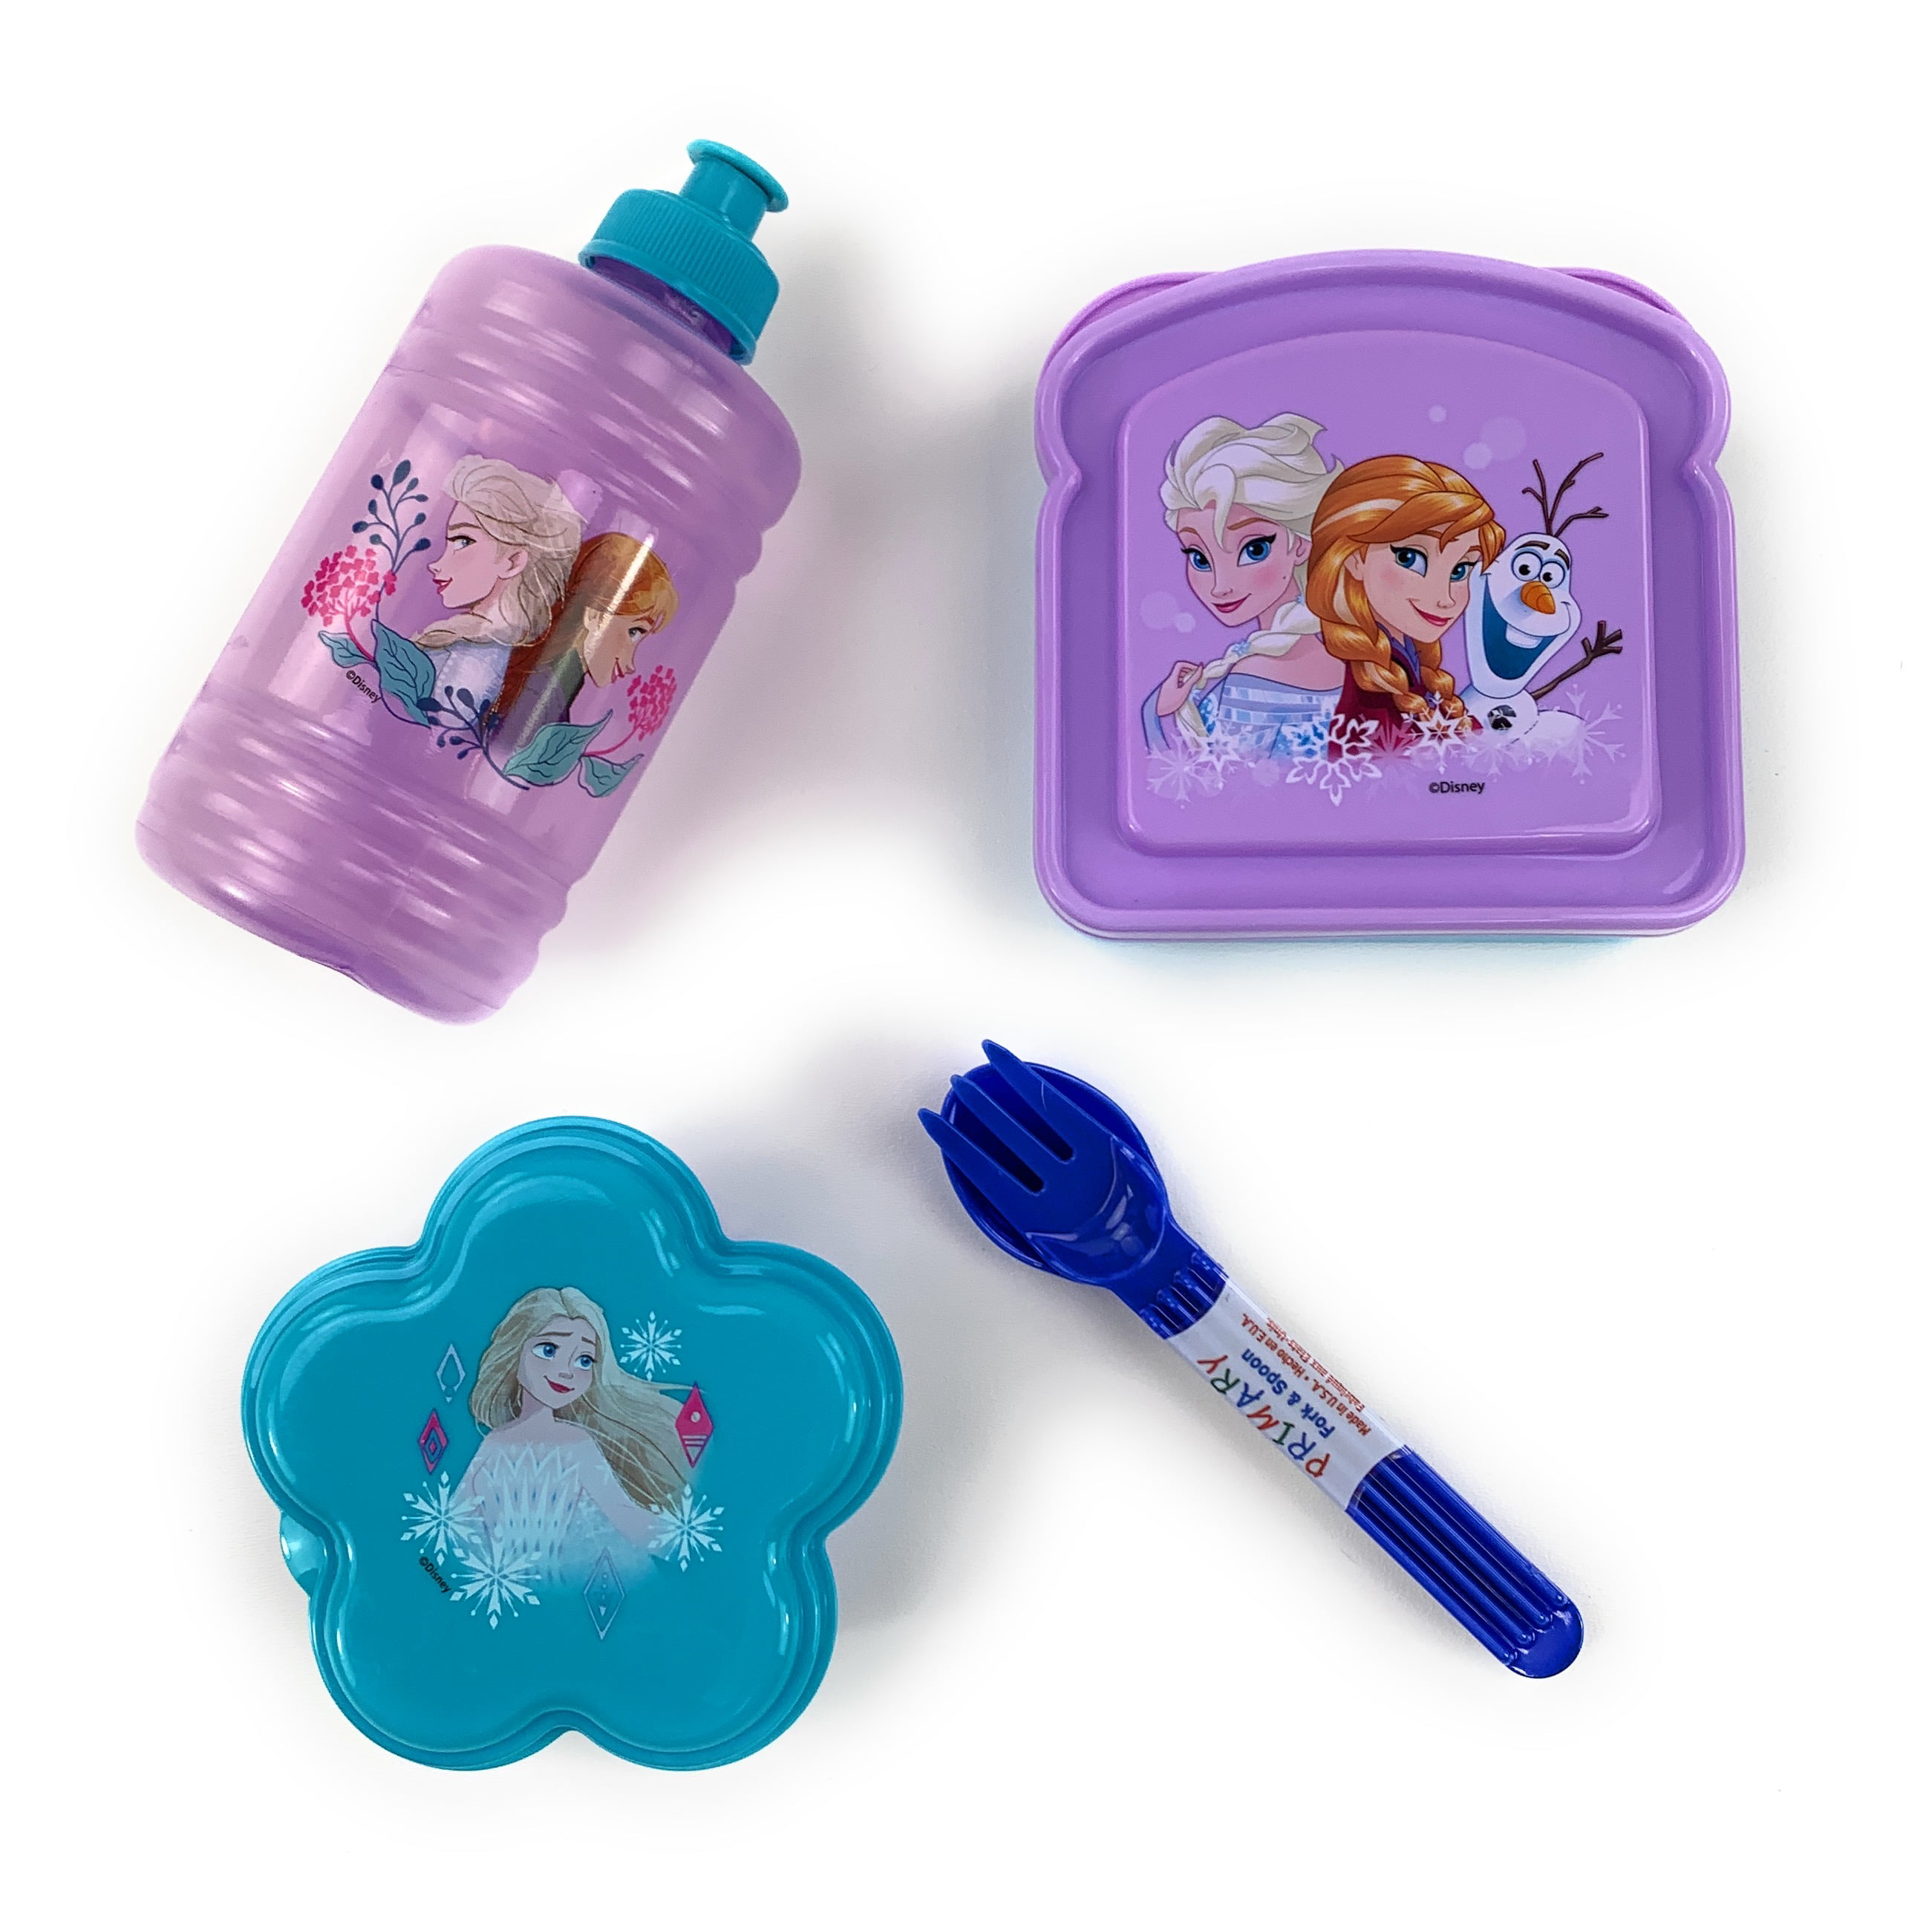 Disney Frozen Elsa Anna - Insulated Lunch Bag Box A17305